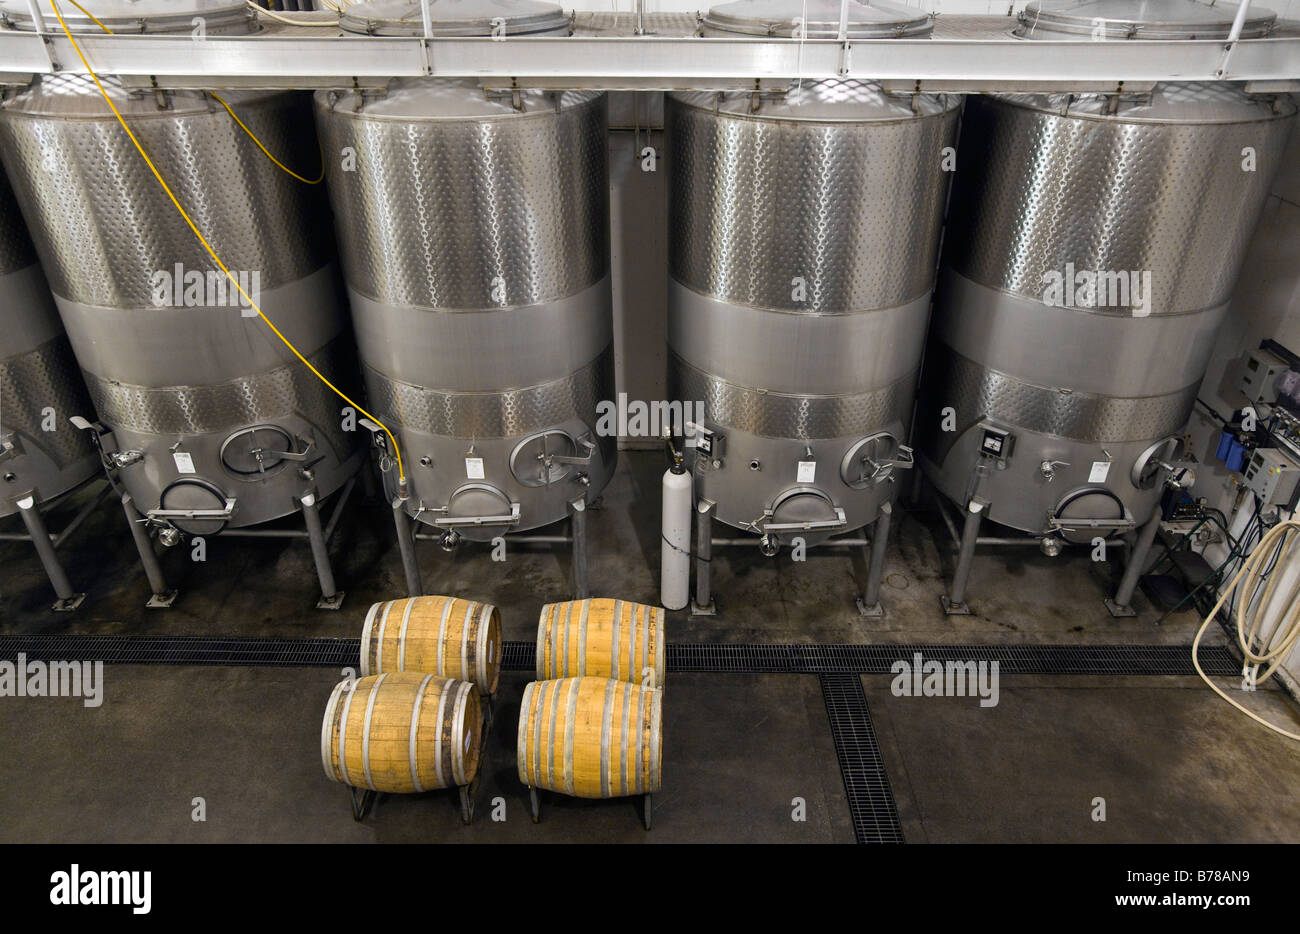 Serbatoio del vino immagini e fotografie stock ad alta risoluzione - Alamy